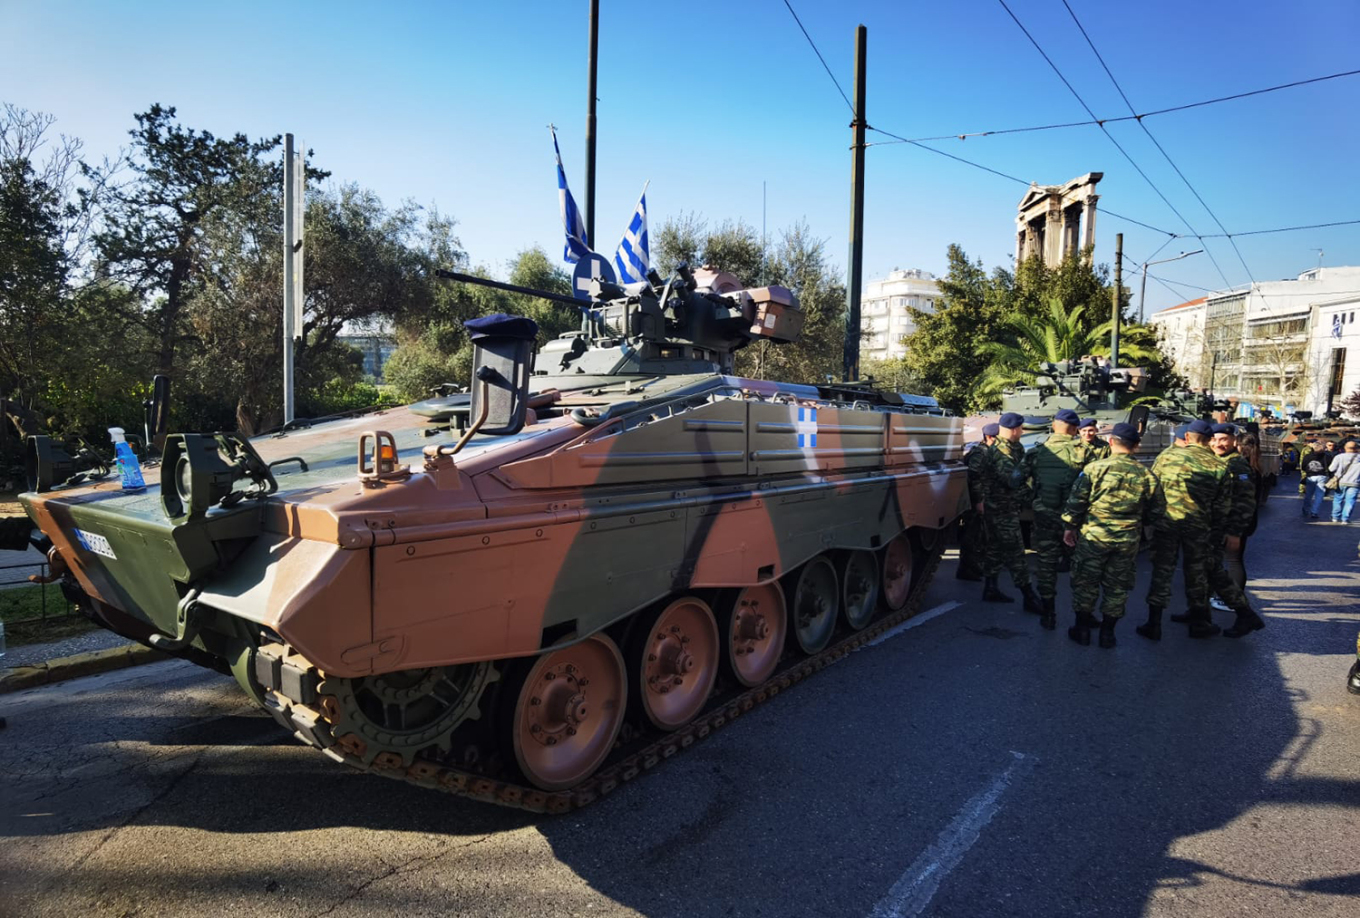 25η Μαρτίου: Οι προετοιμασίες για την μεγάλη στρατιωτική παρέλαση στην Αθήνα